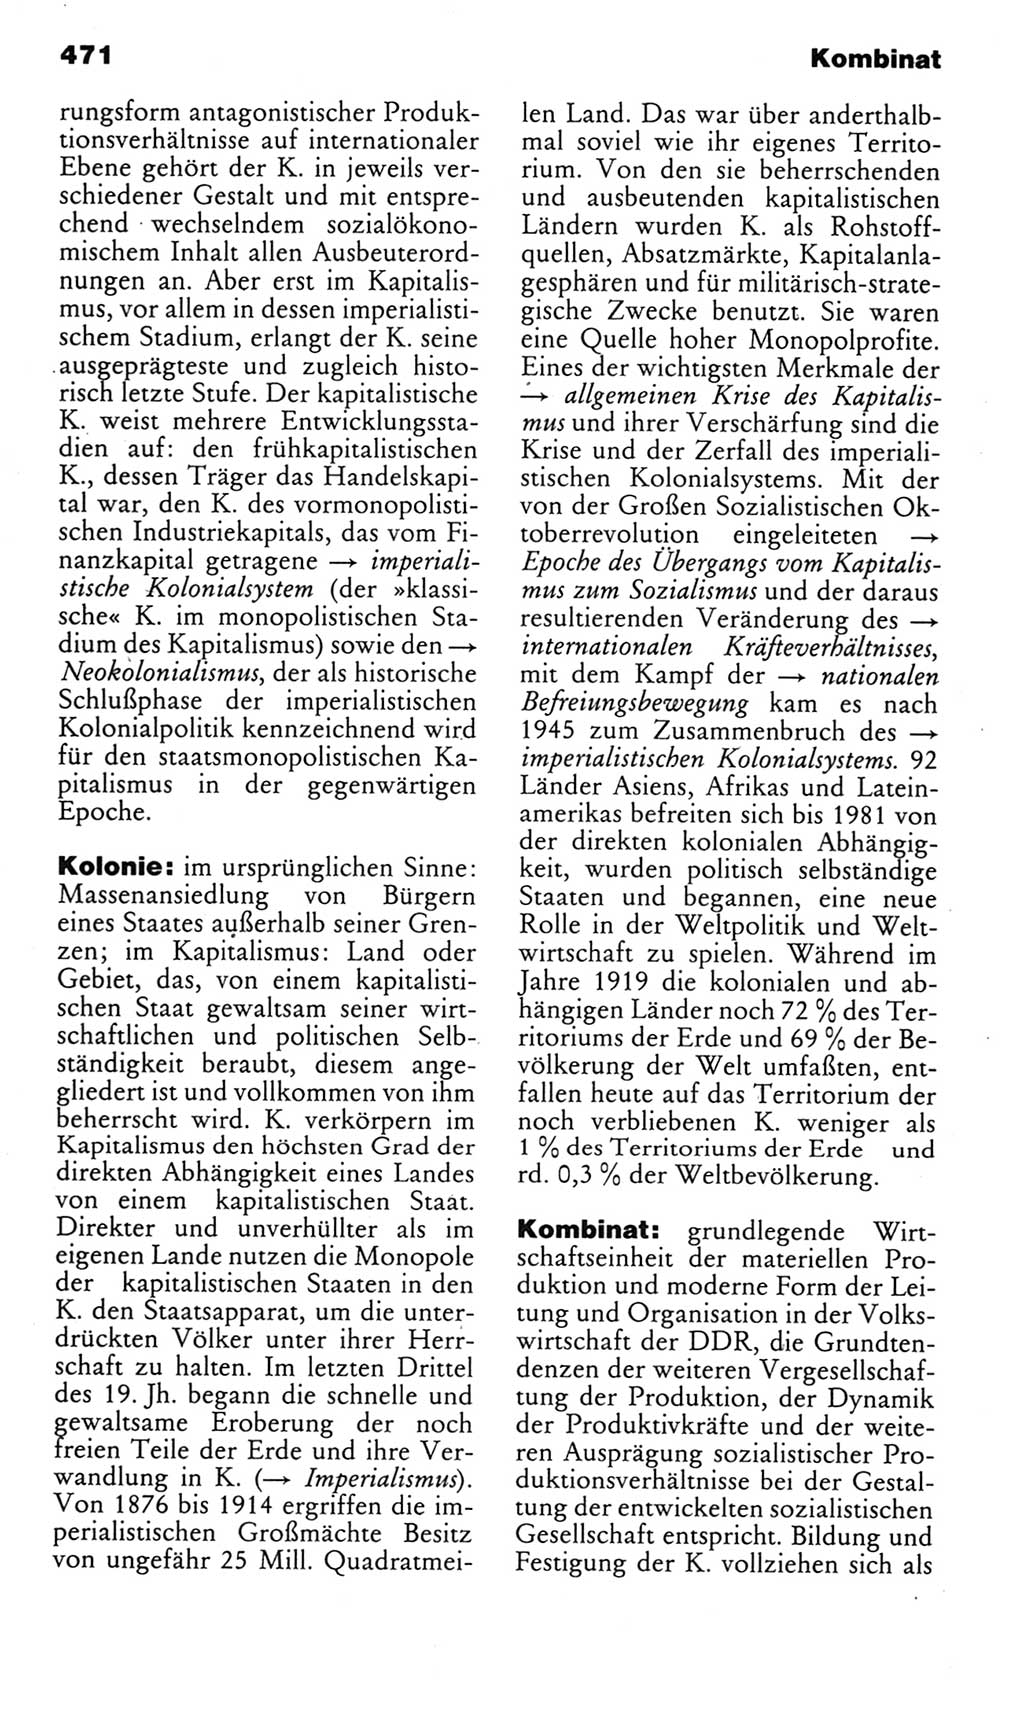 Kleines politisches Wörterbuch [Deutsche Demokratische Republik (DDR)] 1985, Seite 471 (Kl. pol. Wb. DDR 1985, S. 471)